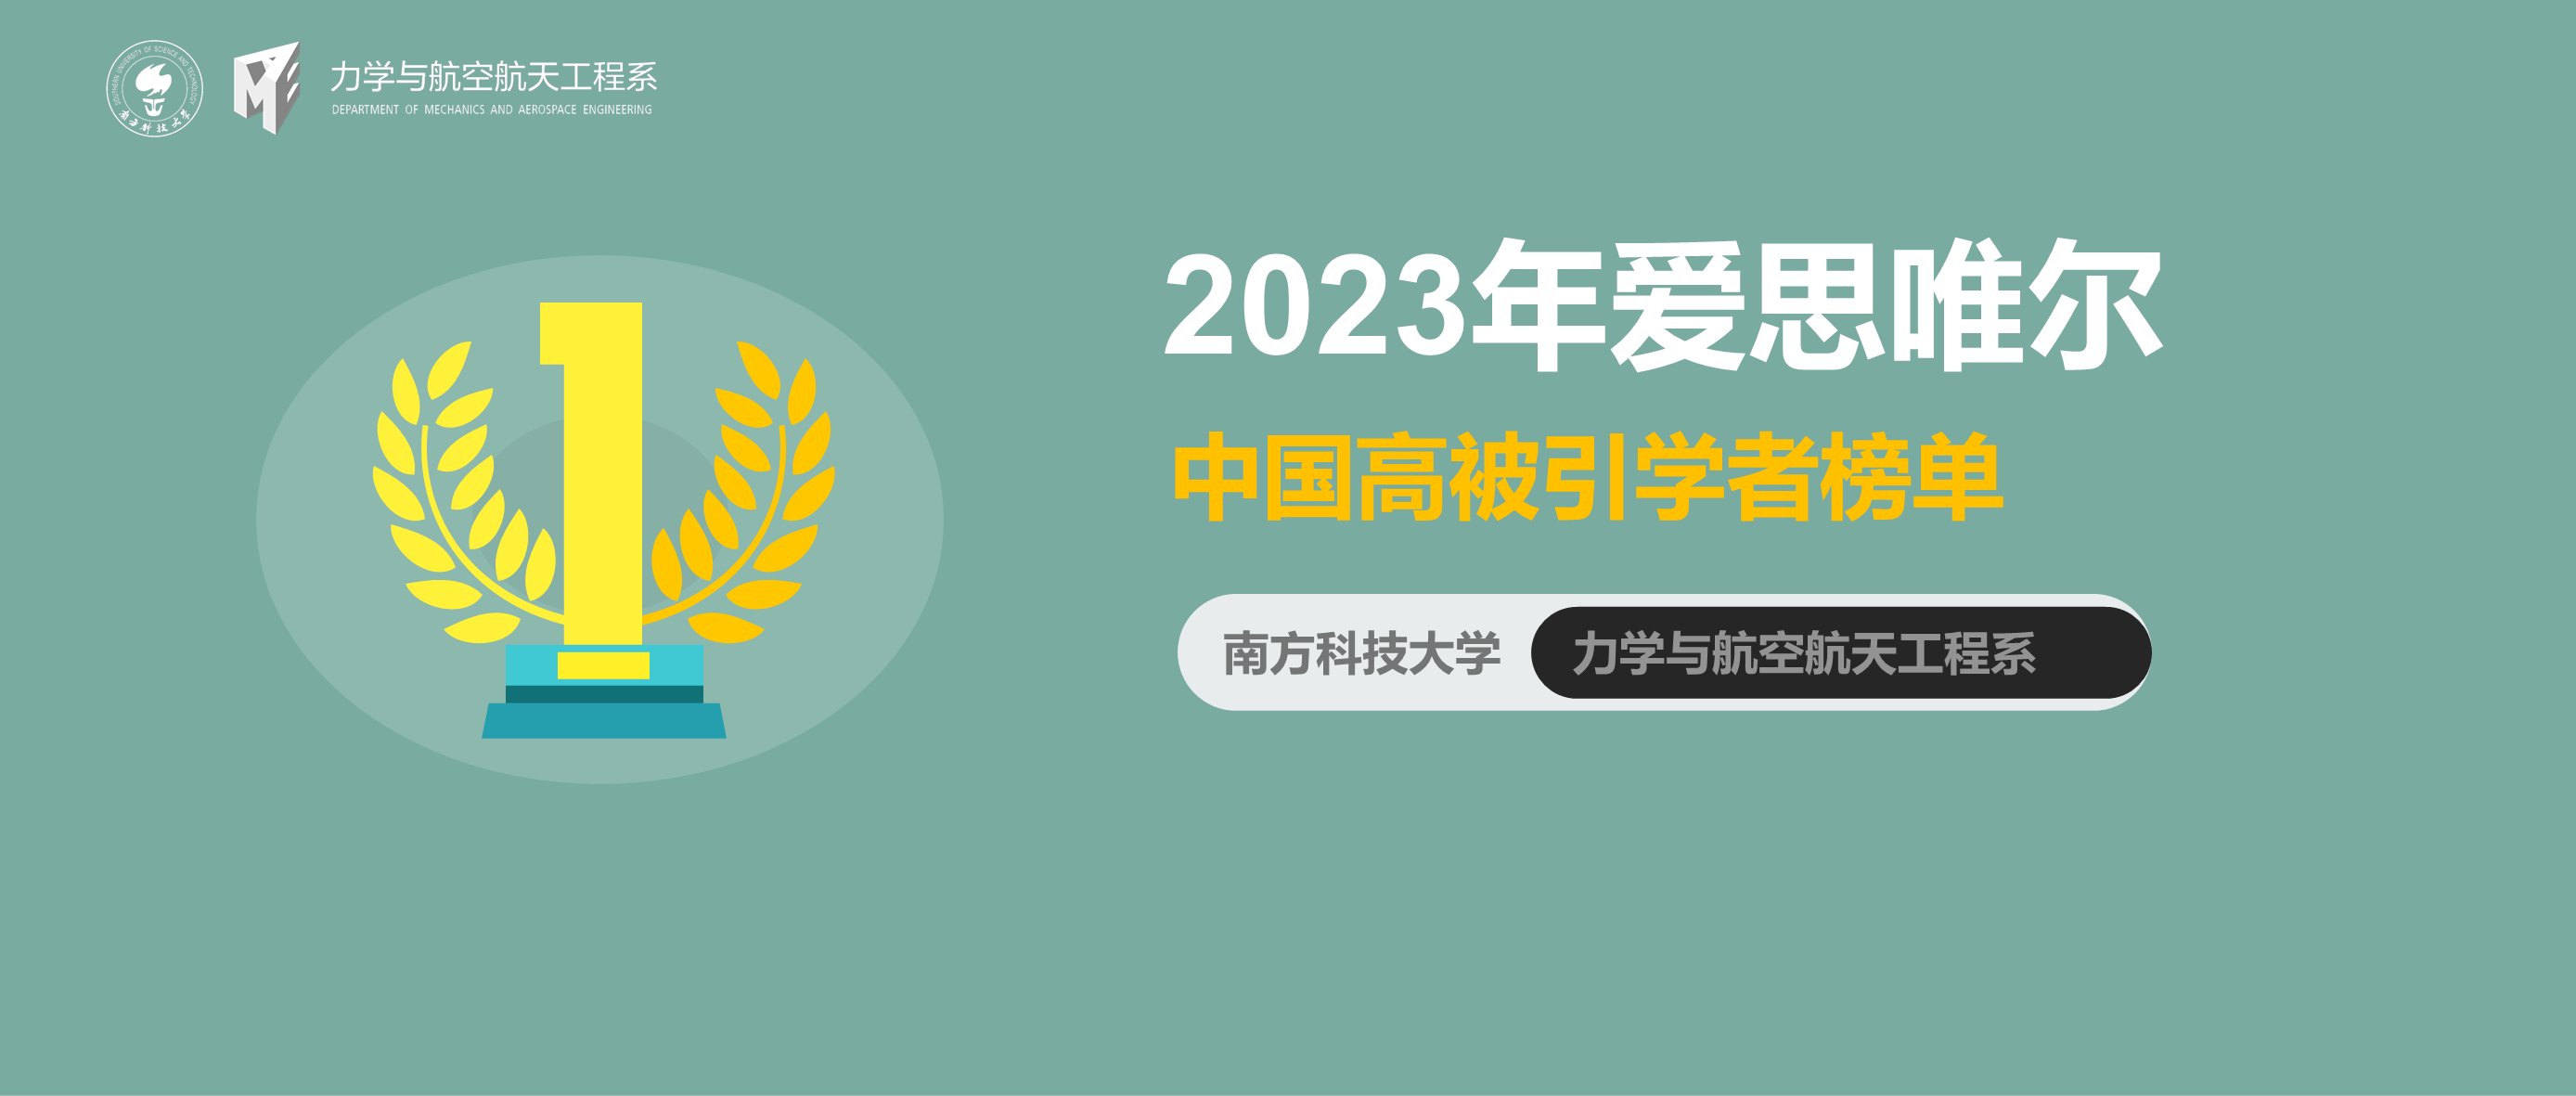 南科大力航系多位教授荣登爱思唯尔“中国高被引学者”2023年度榜单